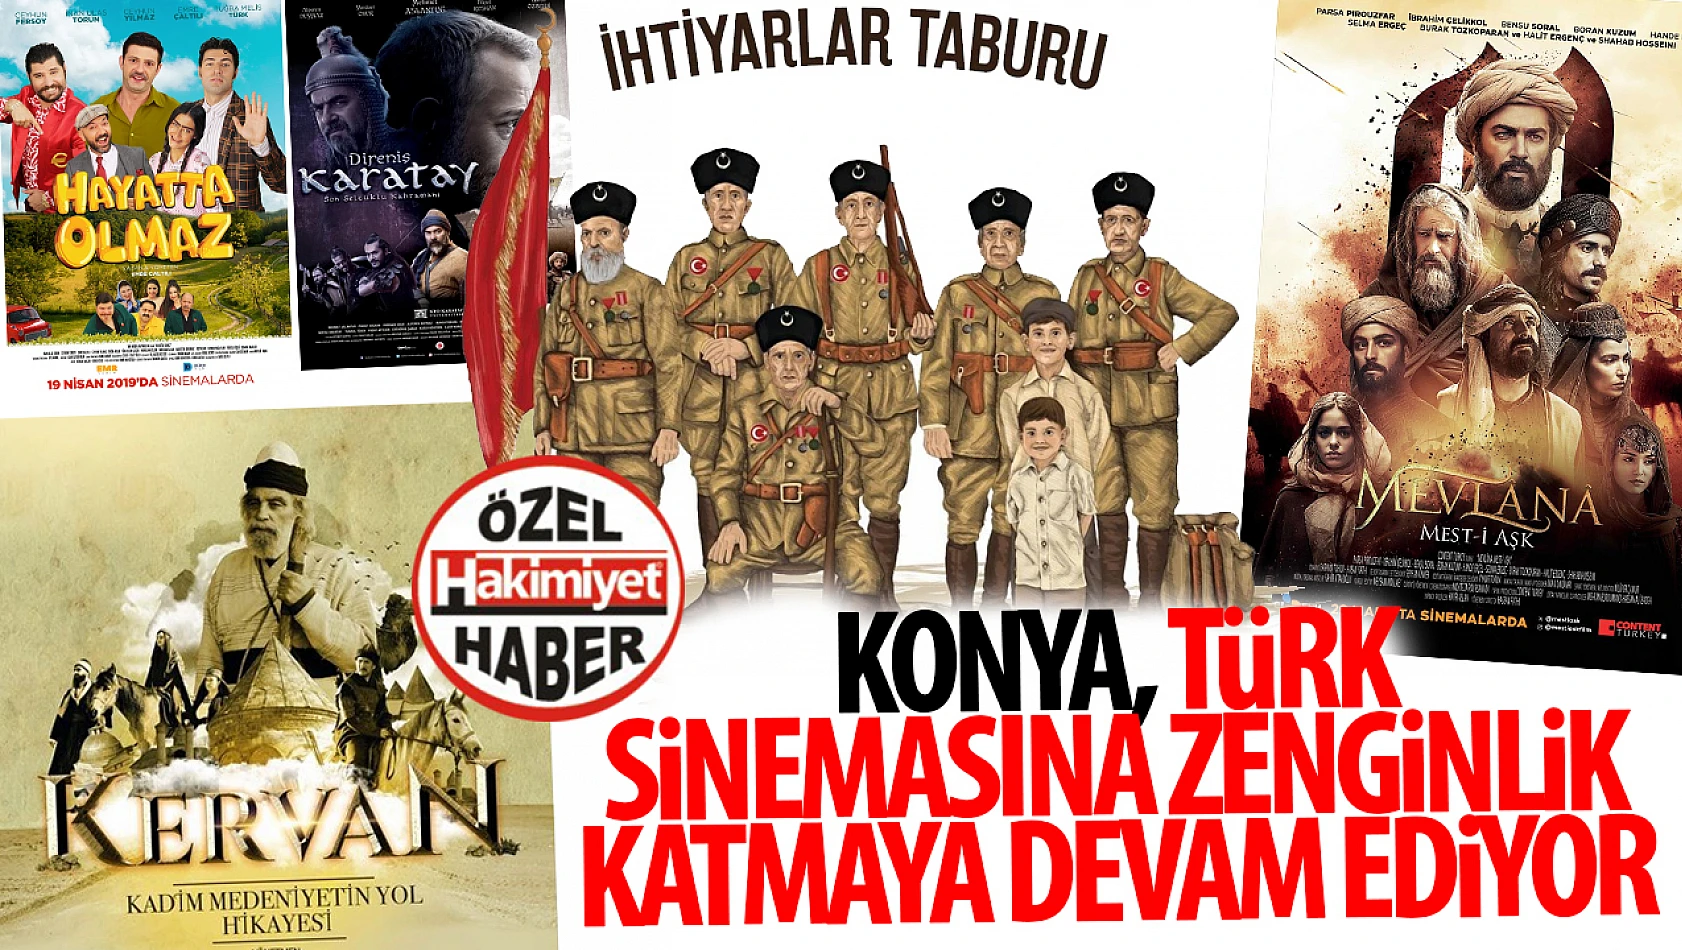 Konya, Türk Sinemasına Zenginlik Katmaya Devam Ediyor: İşte Çekilen Filmlerin Tam Listesi